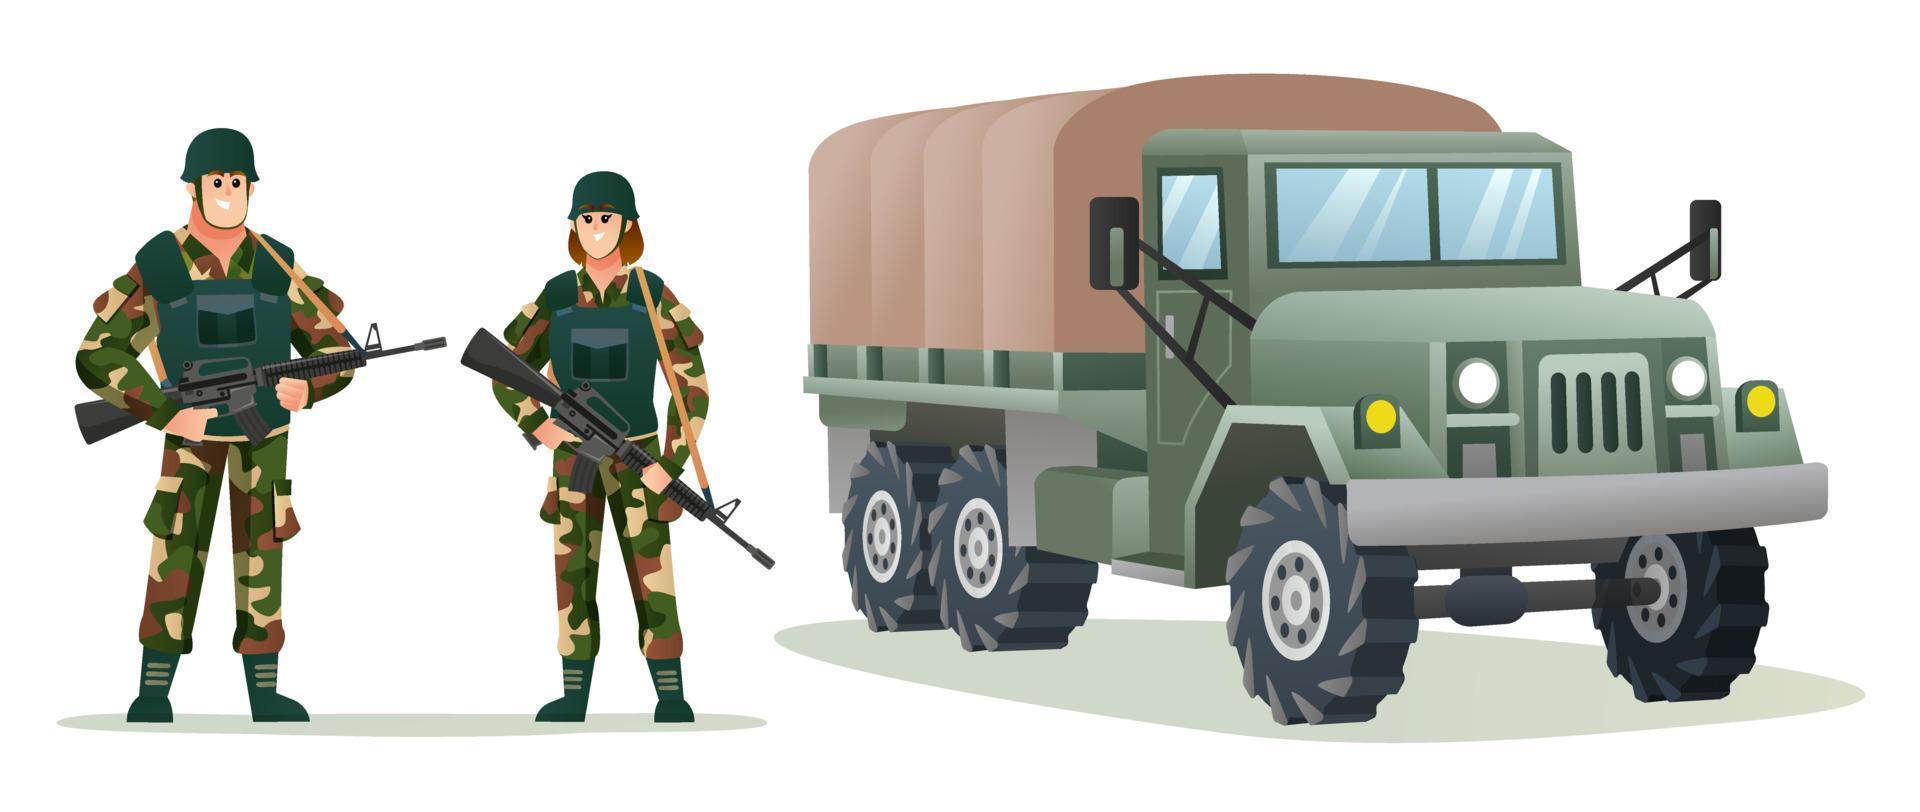 männliche und weibliche armeesoldaten, die waffengewehre mit militärlastwagen-karikaturillustration halten vektor